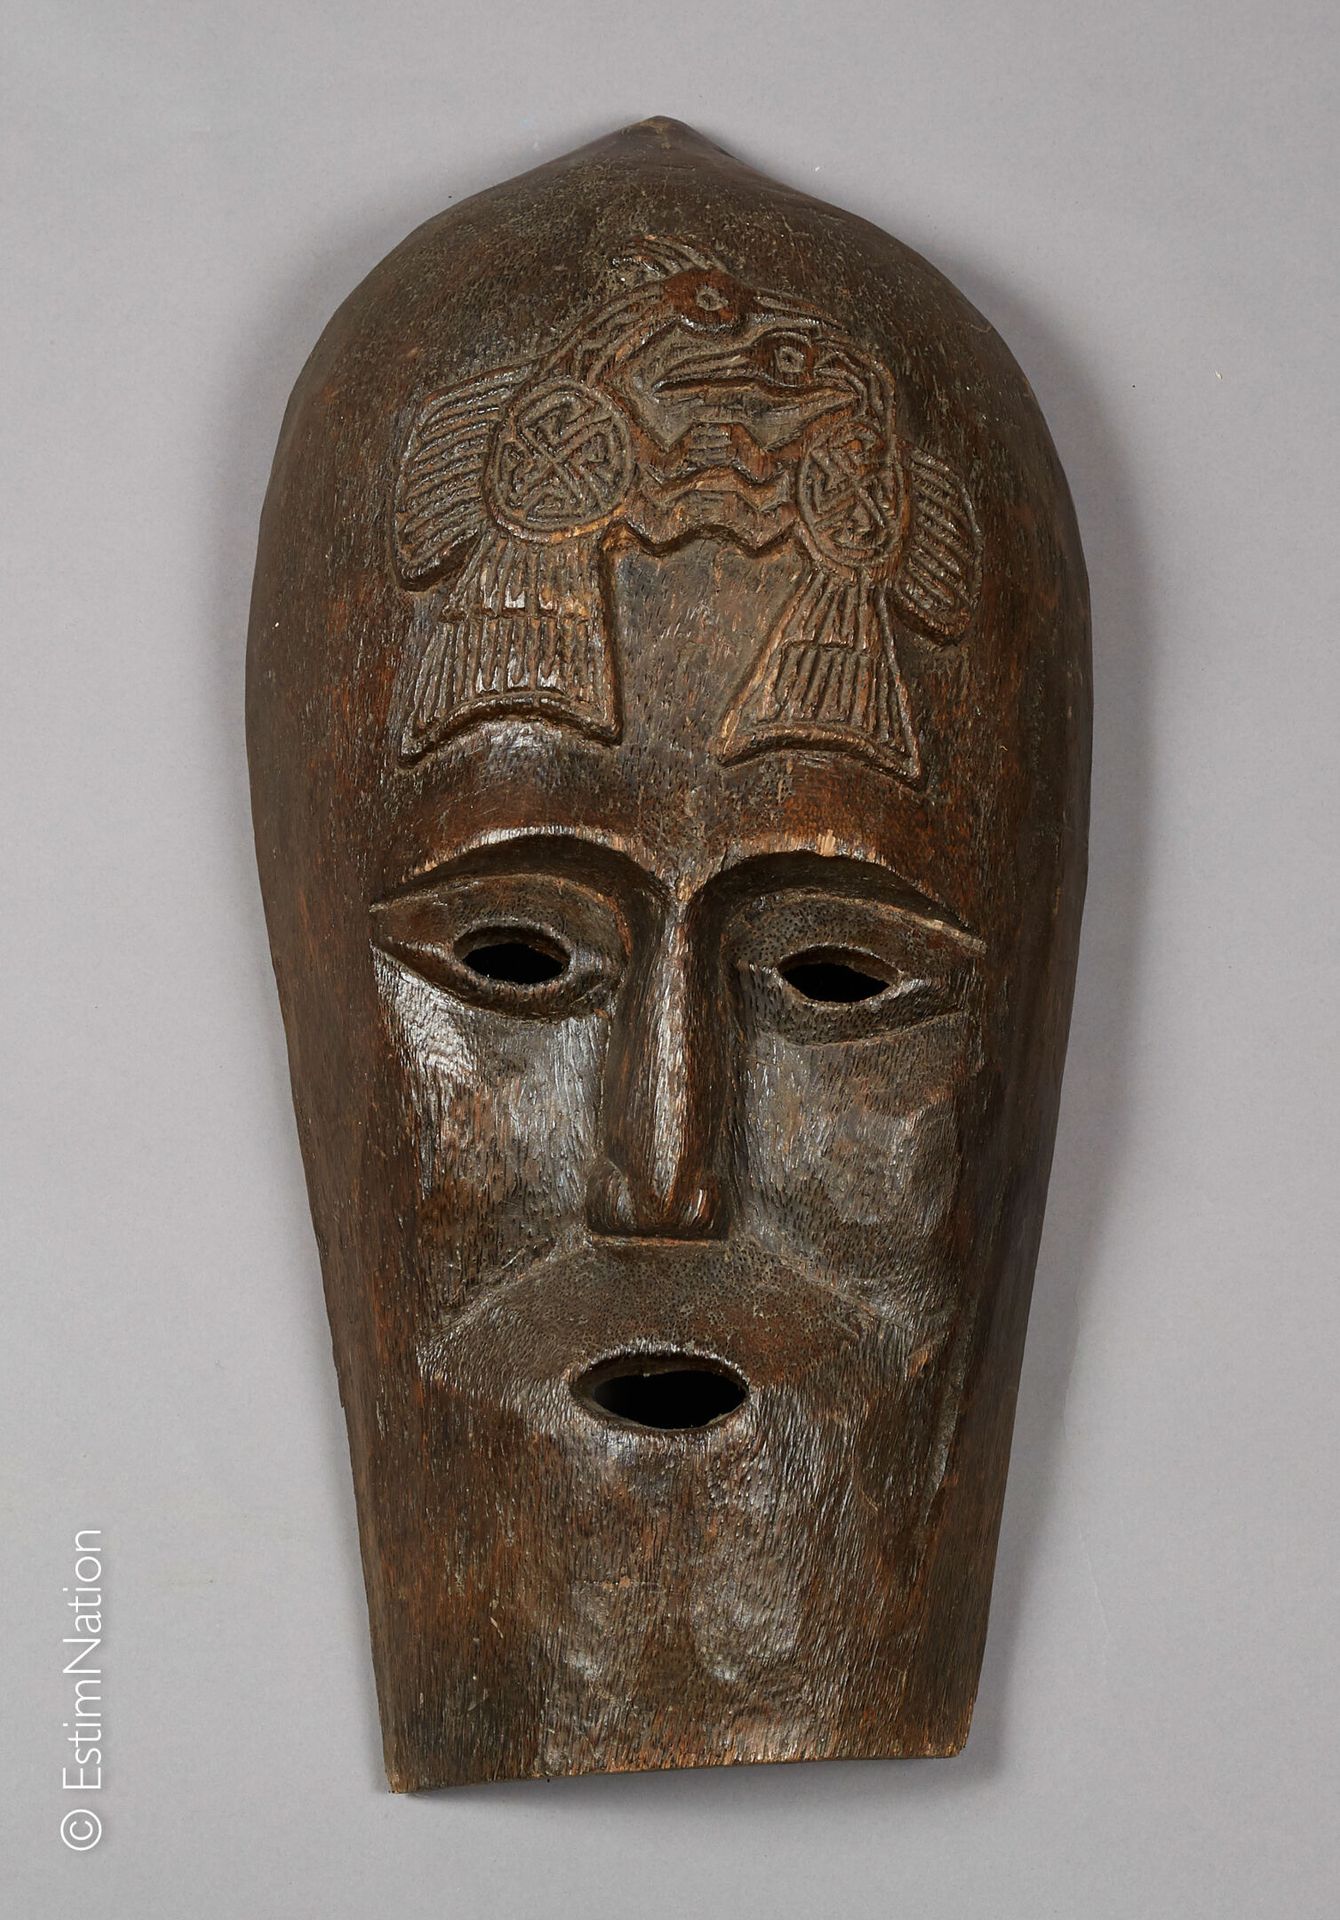 TIMOR TIMOR



Maschera antropomorfa in legno intagliato con decorazione incisa &hellip;